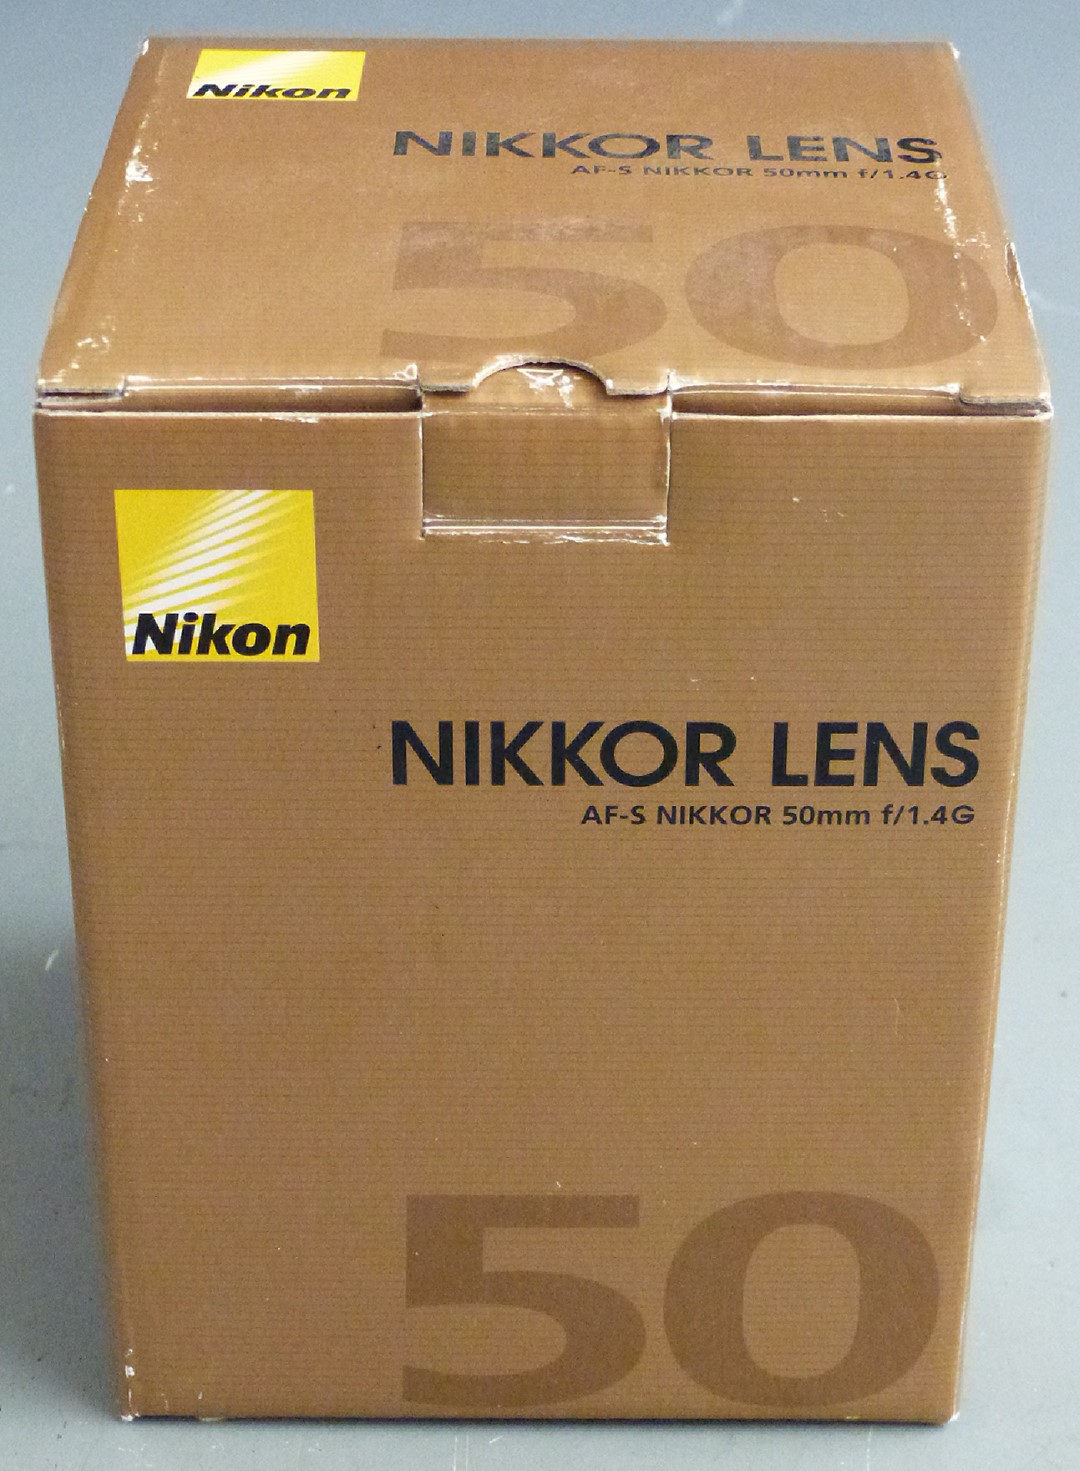 Nikon AF-S Nikkor 50mm f/1.4G lens in box - Image 3 of 3